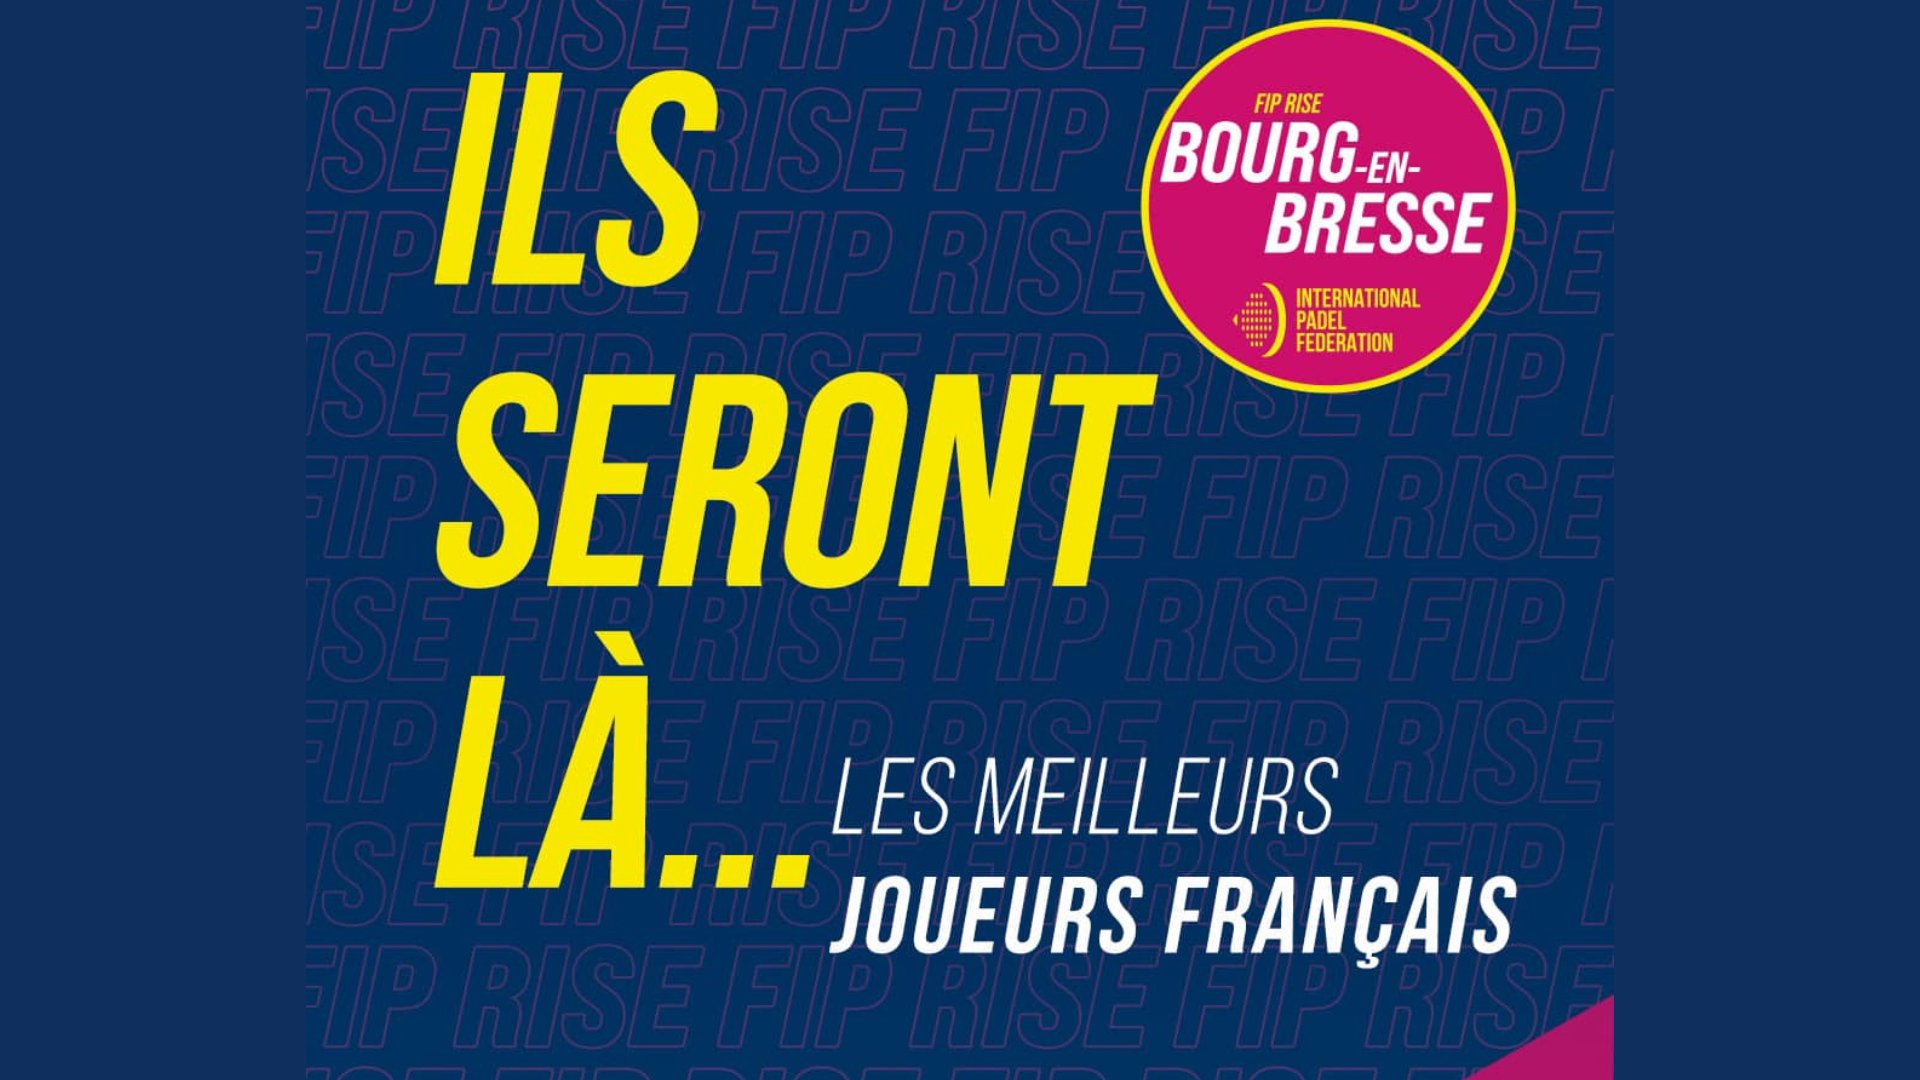 Melhores jogadores franceses FIP Rise Bourge en Bresse